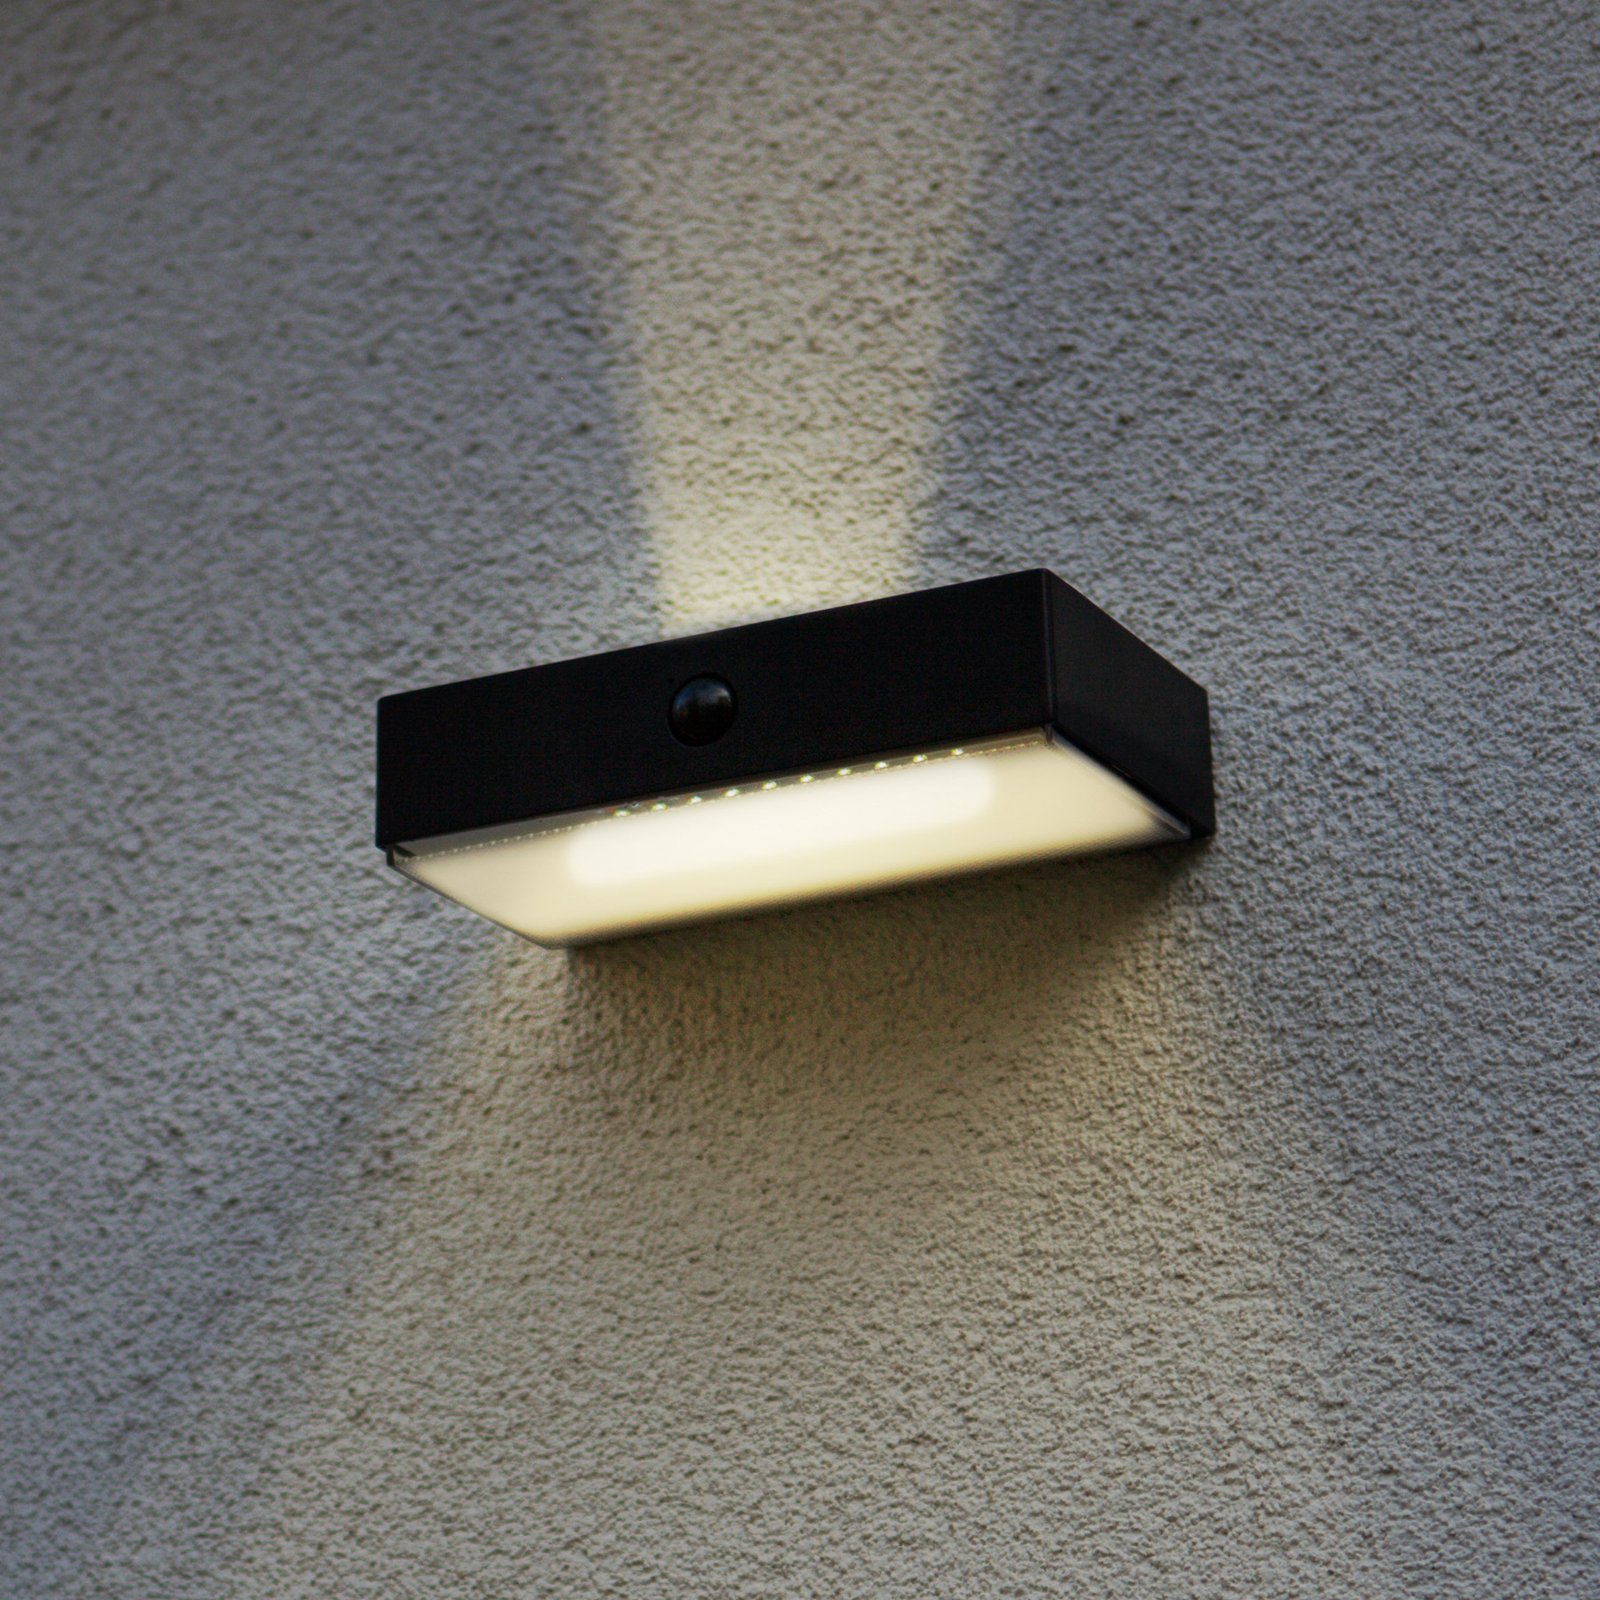 Solárne vonkajšie nástenné LED svietidlo Fadi, CCT